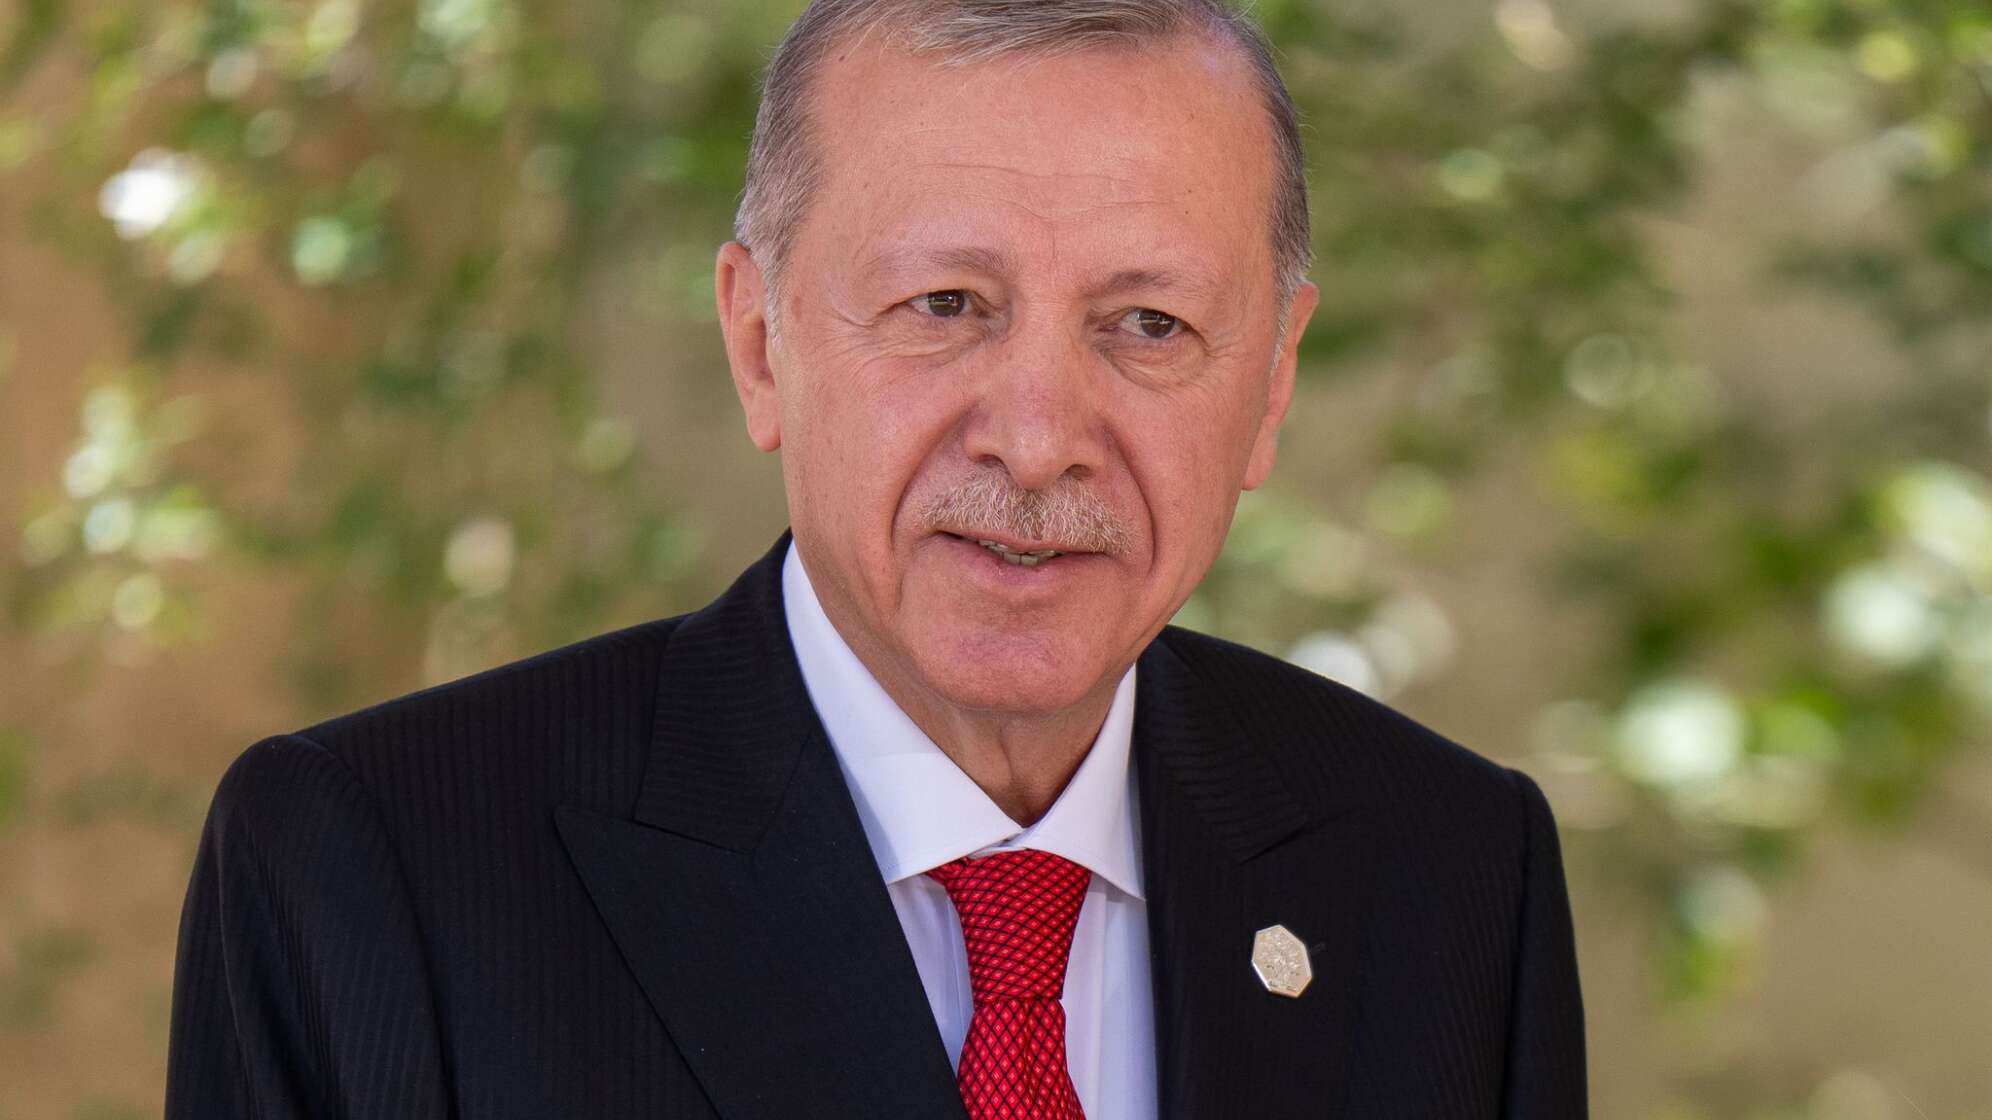 Türkischer Präsident Recep Tayyip Erdogan (Archivbild)